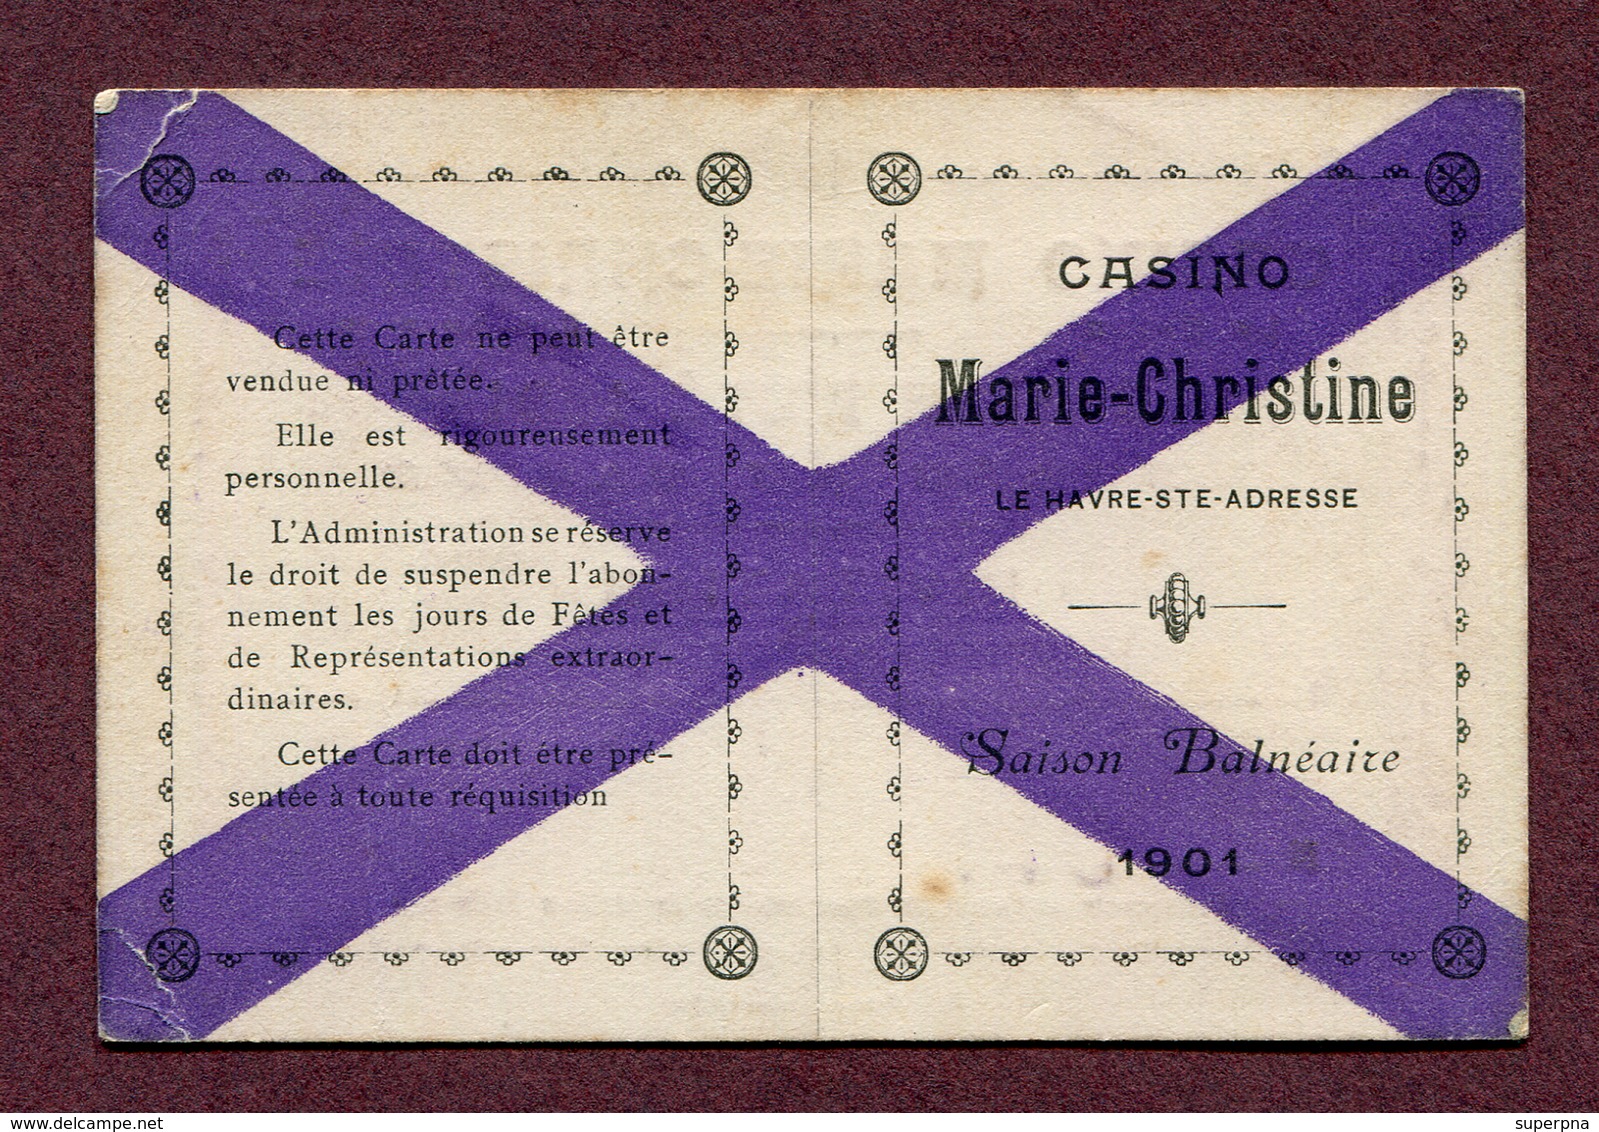 LE HAVRE : " CASINO MARIE-CHRISTINE " : CARTE D'ENTREE 1901 - Documents Historiques